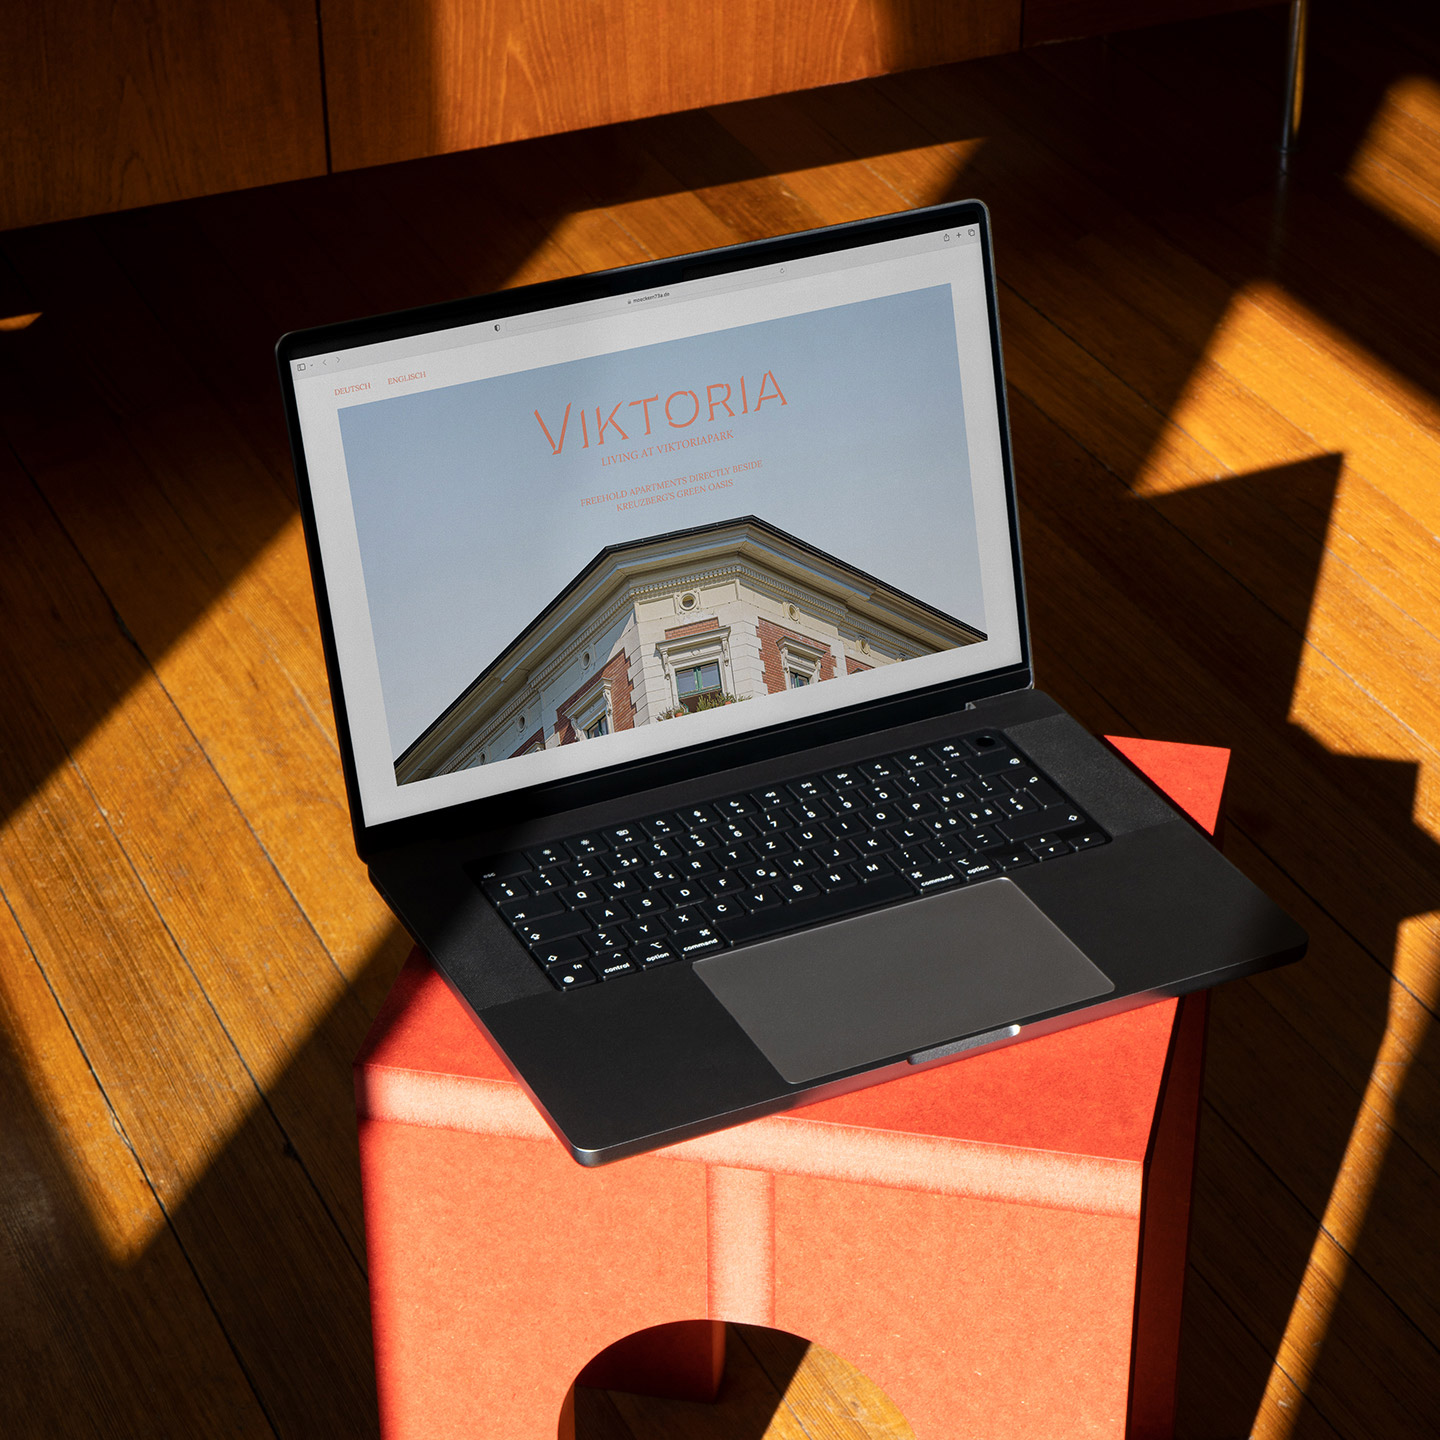 MacBook steht aufgeklappt auf einem korall-farbenem Hocker, auf dem Screen ist die Startseite der "Viktoria" Website zu sehen mit dem Logo und einem großen Bild der Fassade